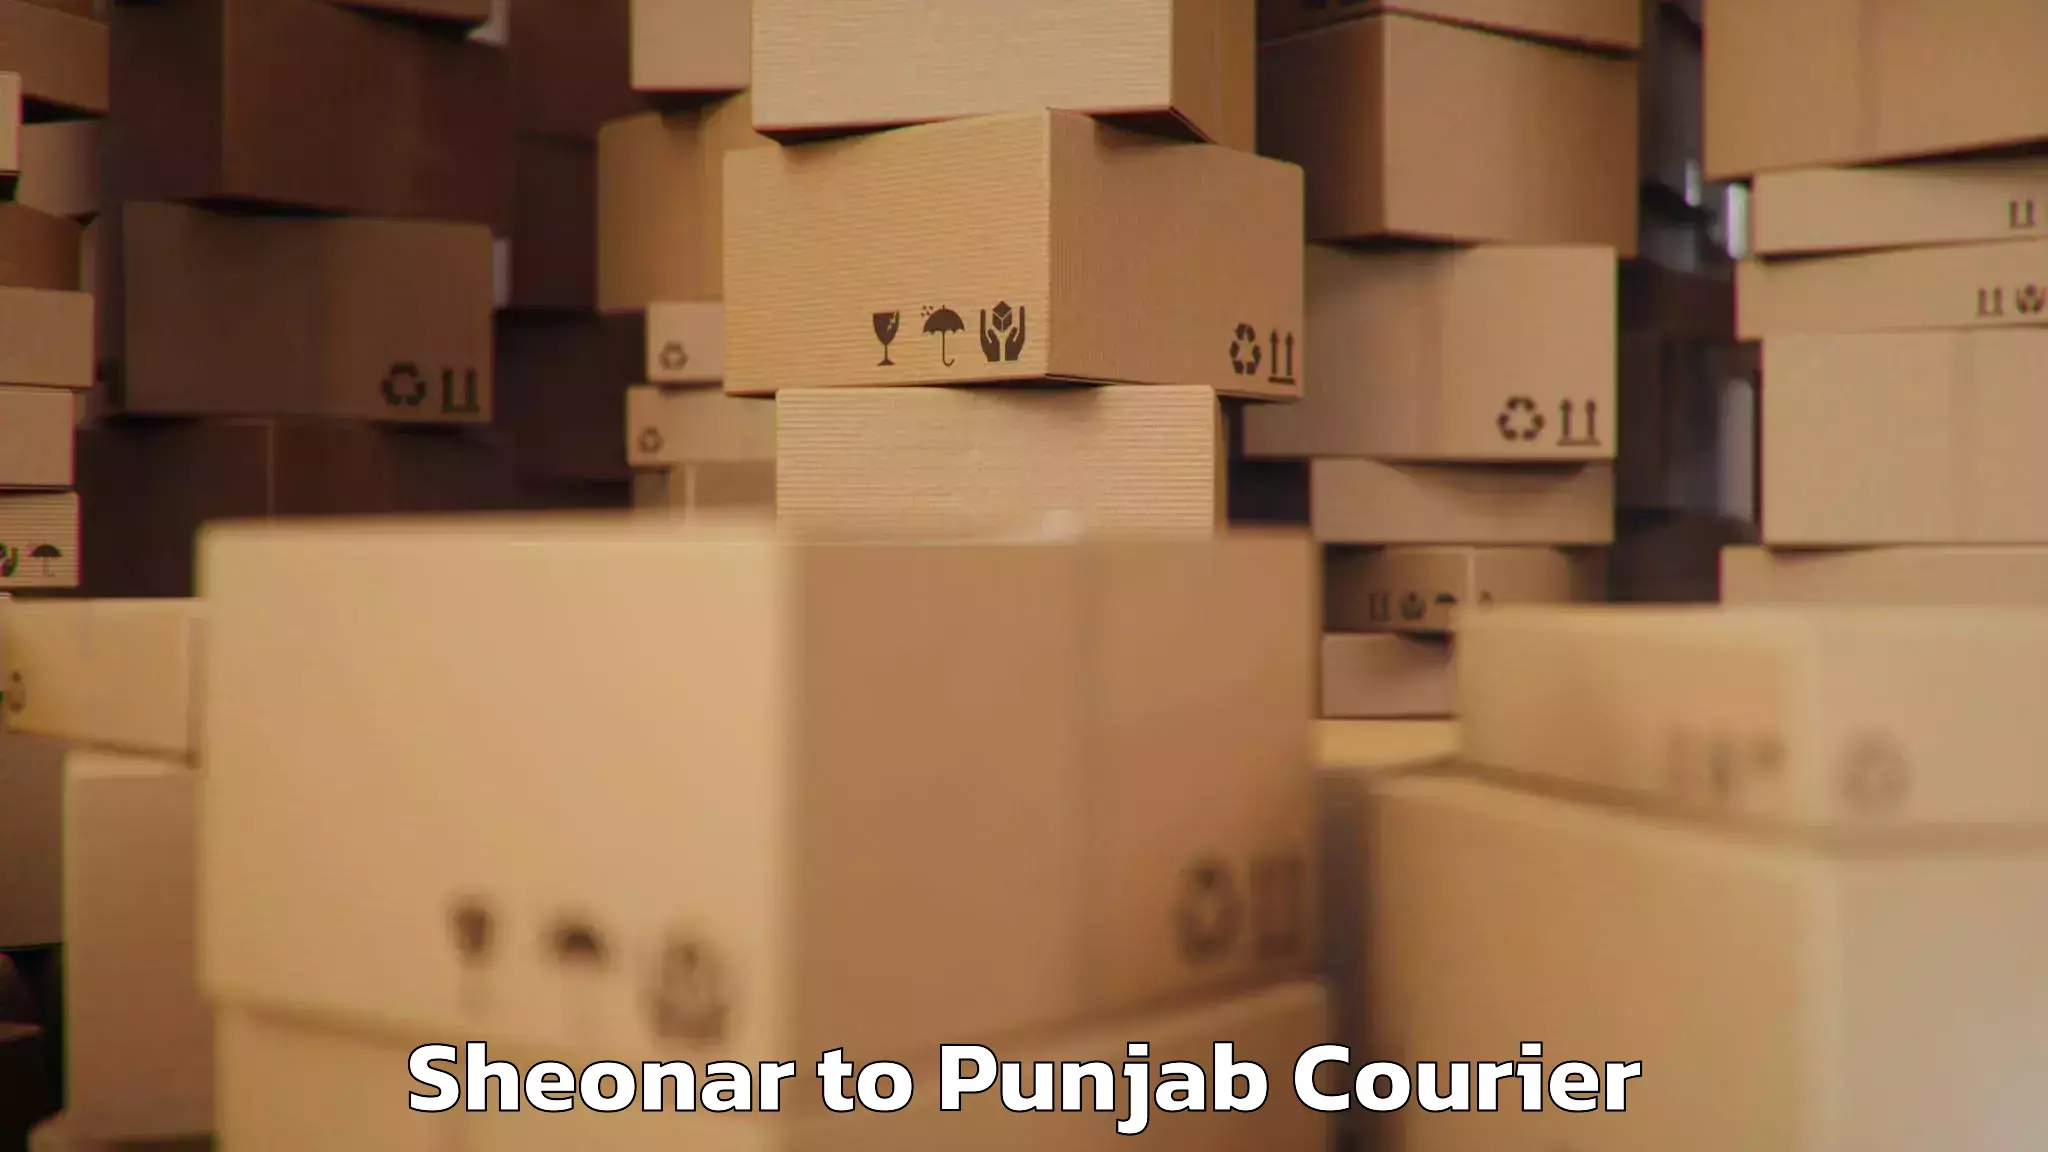 Luggage delivery network Sheonar to Jalandhar